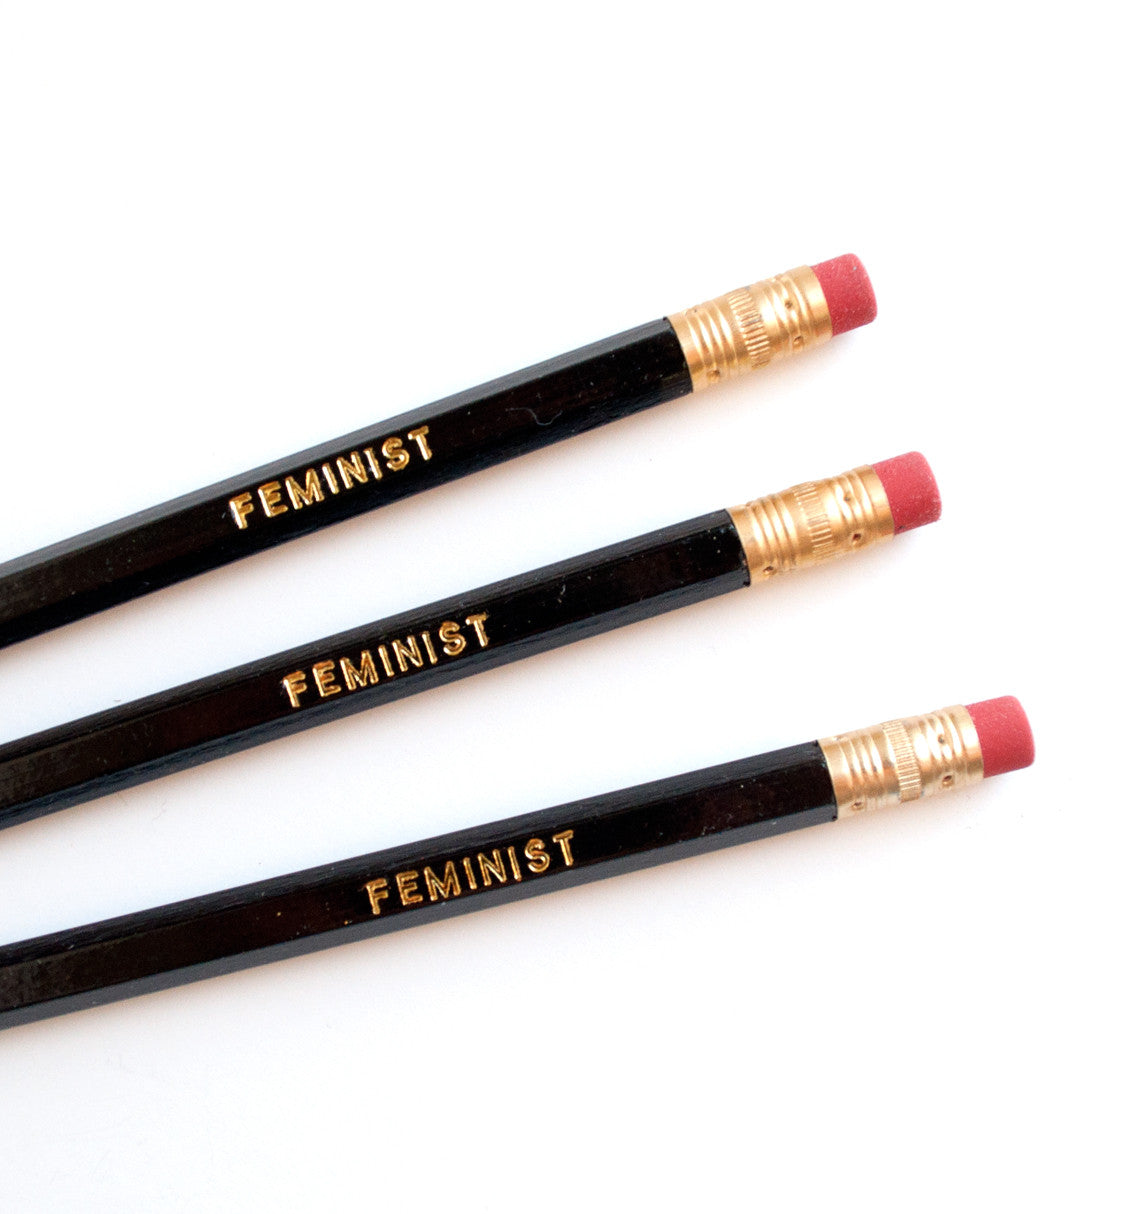 Feminist pencils